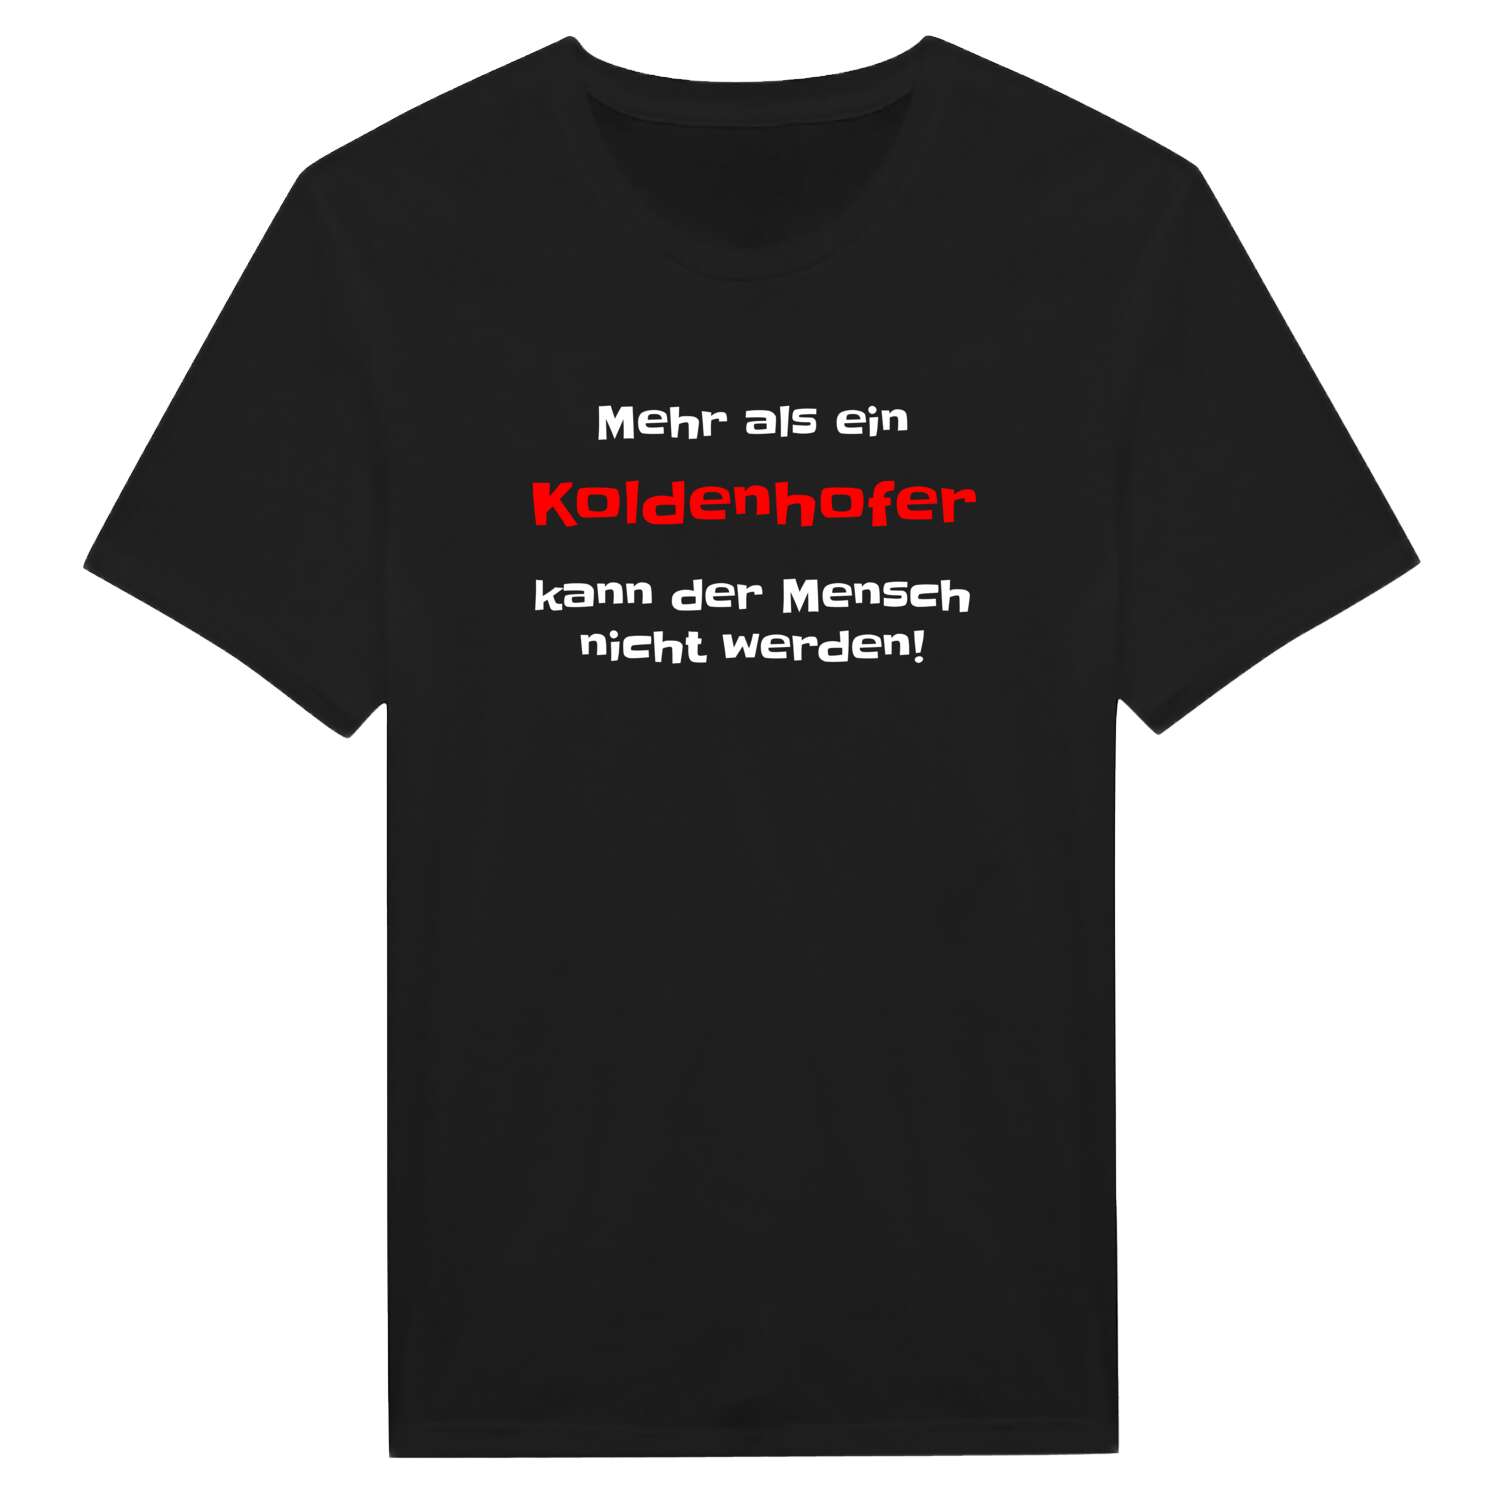 Koldenhof T-Shirt »Mehr als ein«